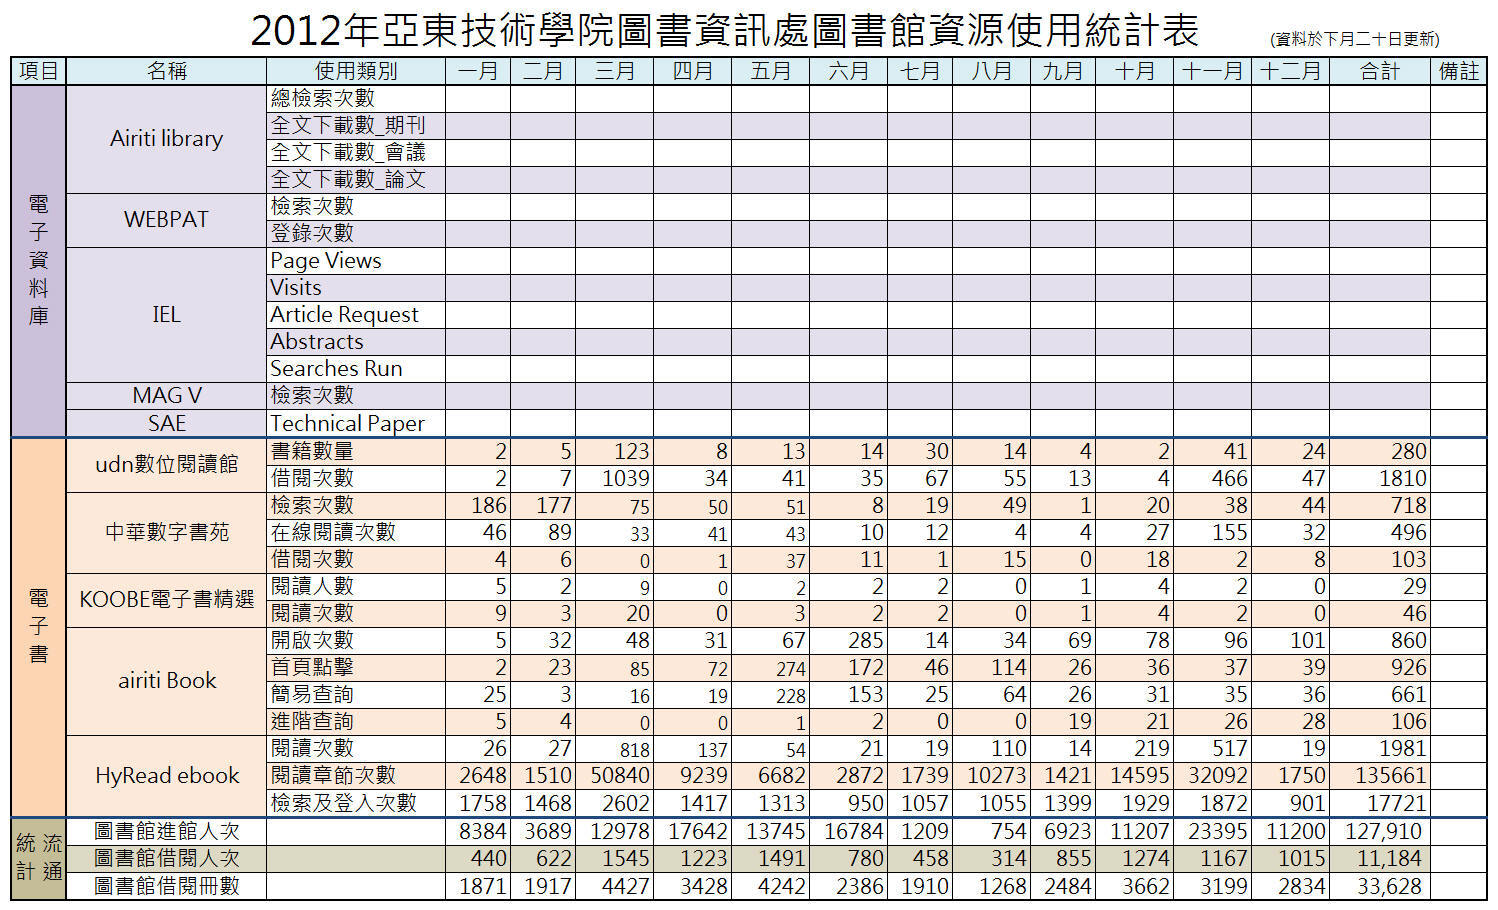 2012圖書館資源使用統計表